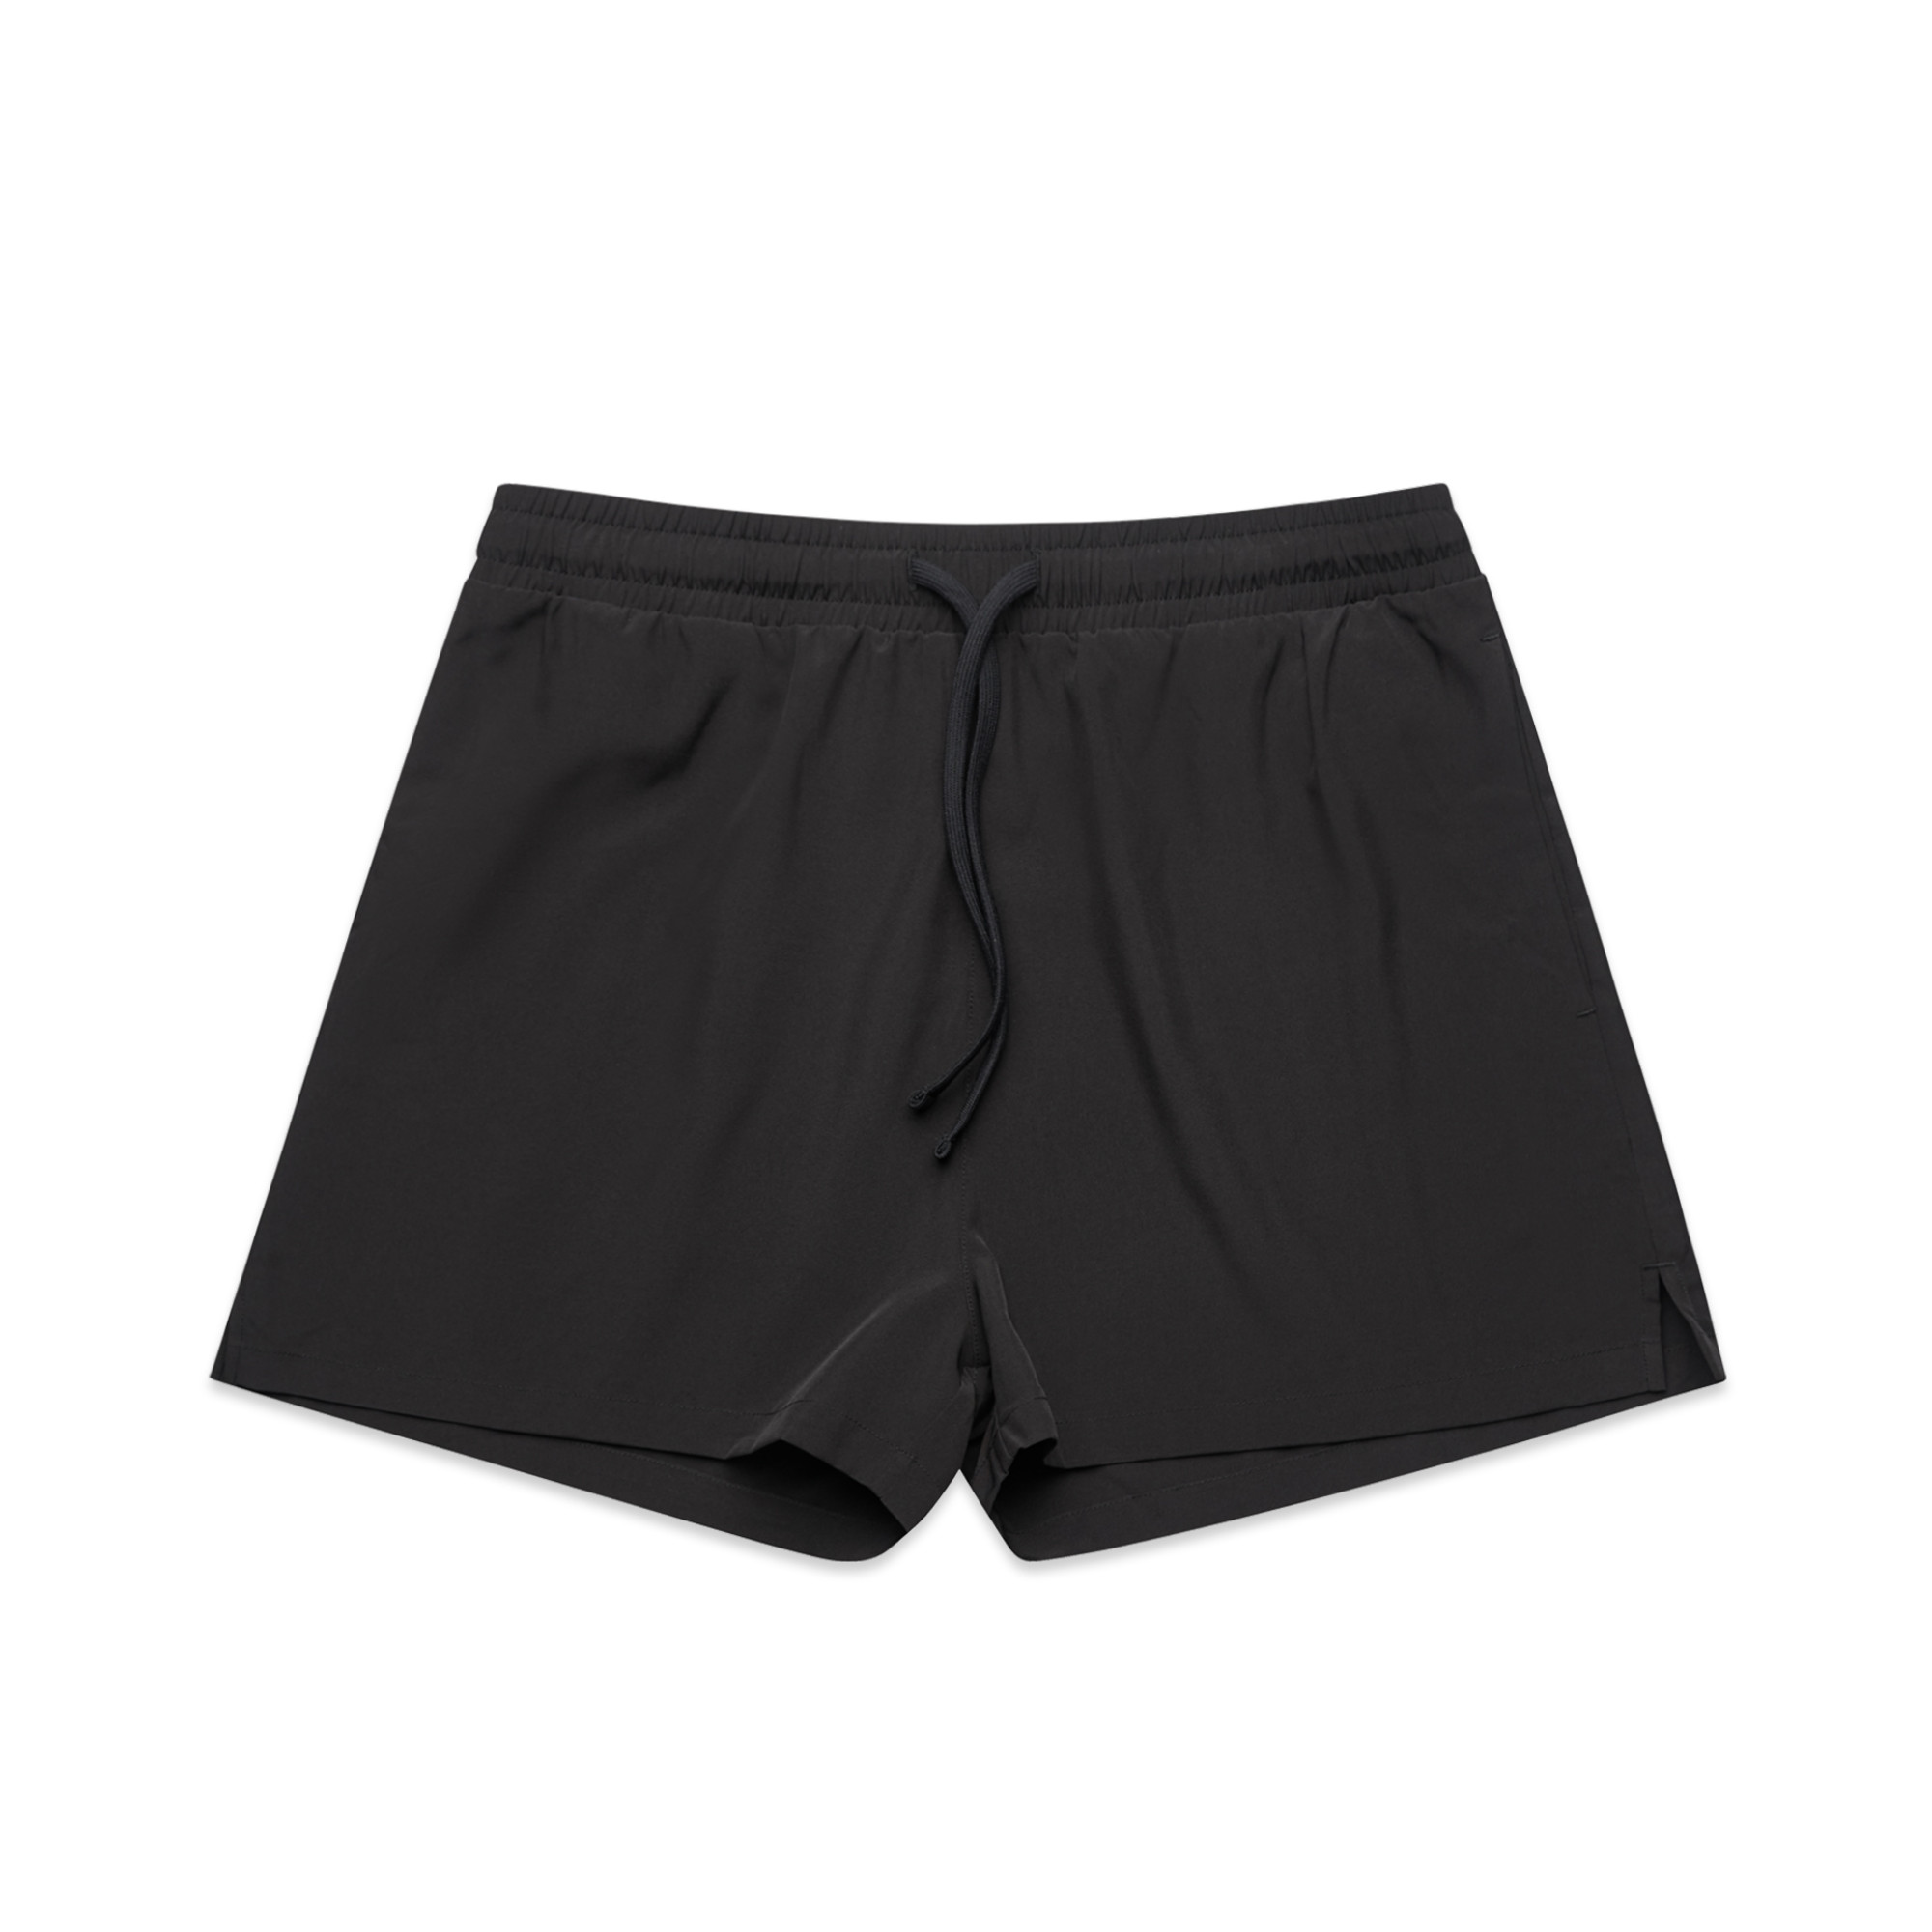 Wo's Active Shorts - 4620 - AS Colour AU